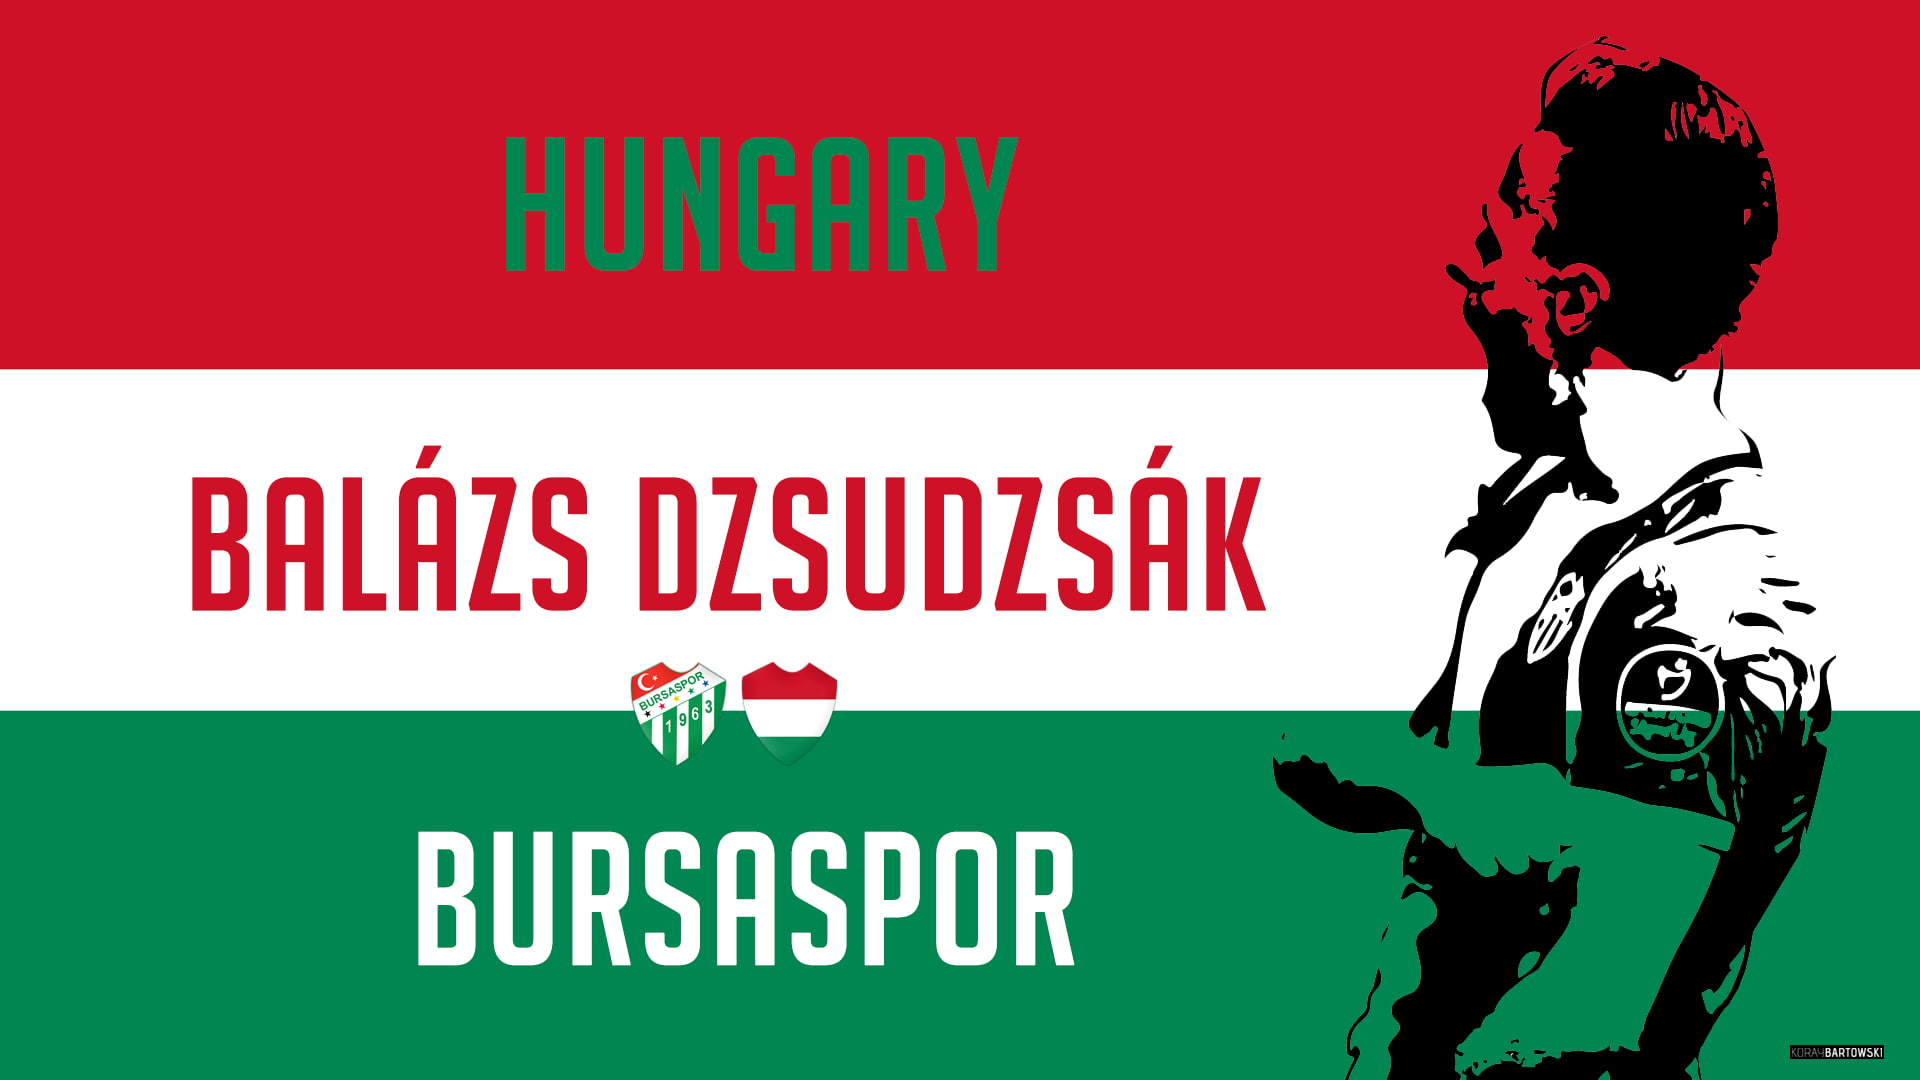 Balazs Dzsudzsak, Bursaspor, soccer, Soccer Clubs, text, western script